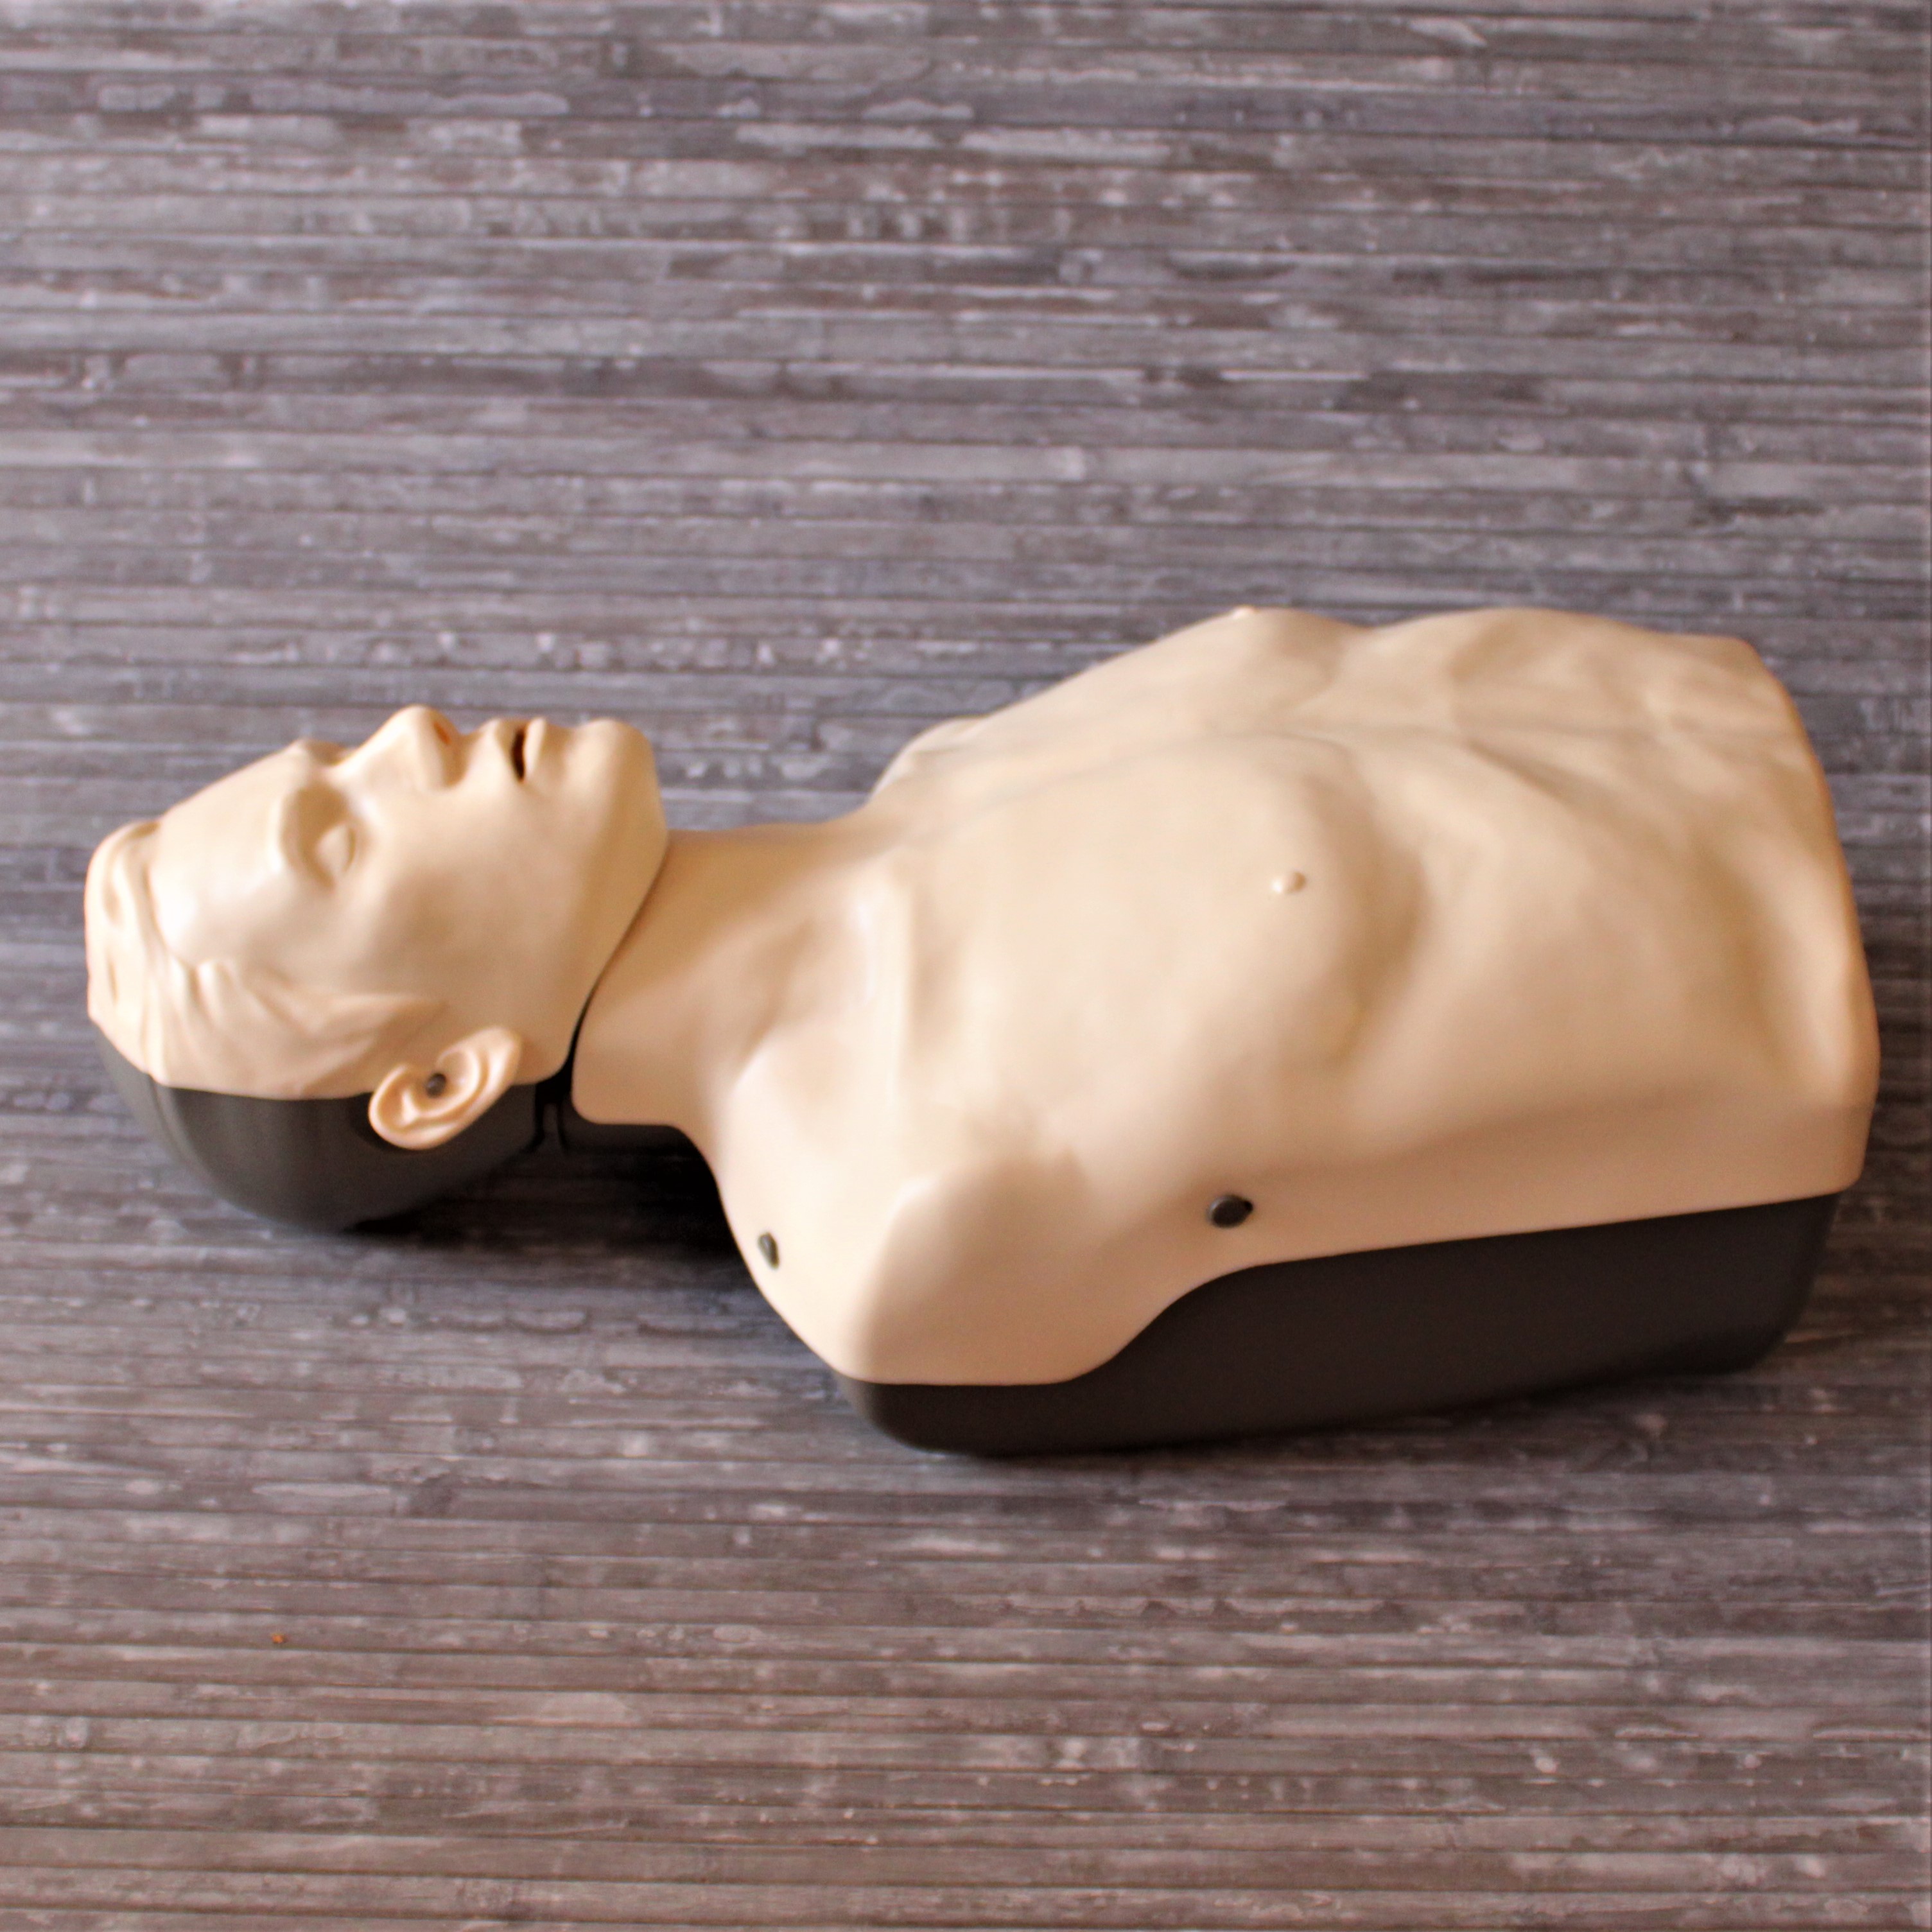 Vermietung von AEDs, Übungspuppen, AED-Trainingsgeräten und anderen Lehrmaterialien